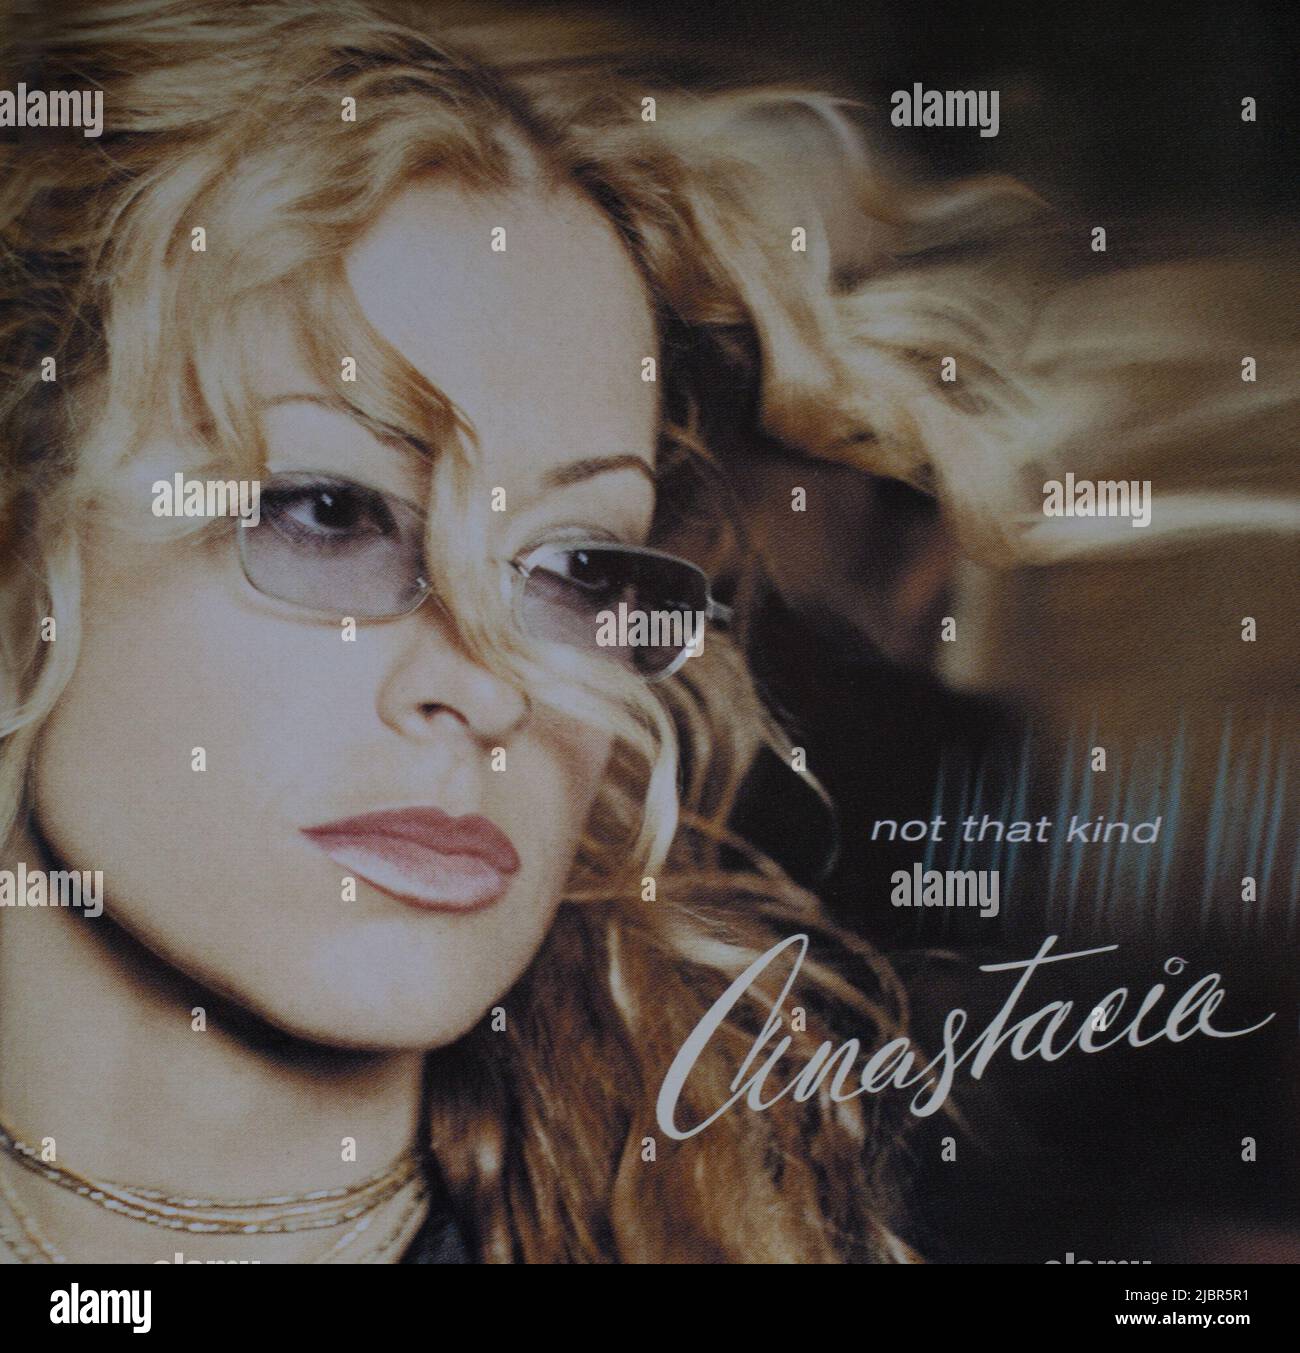 La copertina dell'album del cd, non quella di Anastacia Foto Stock